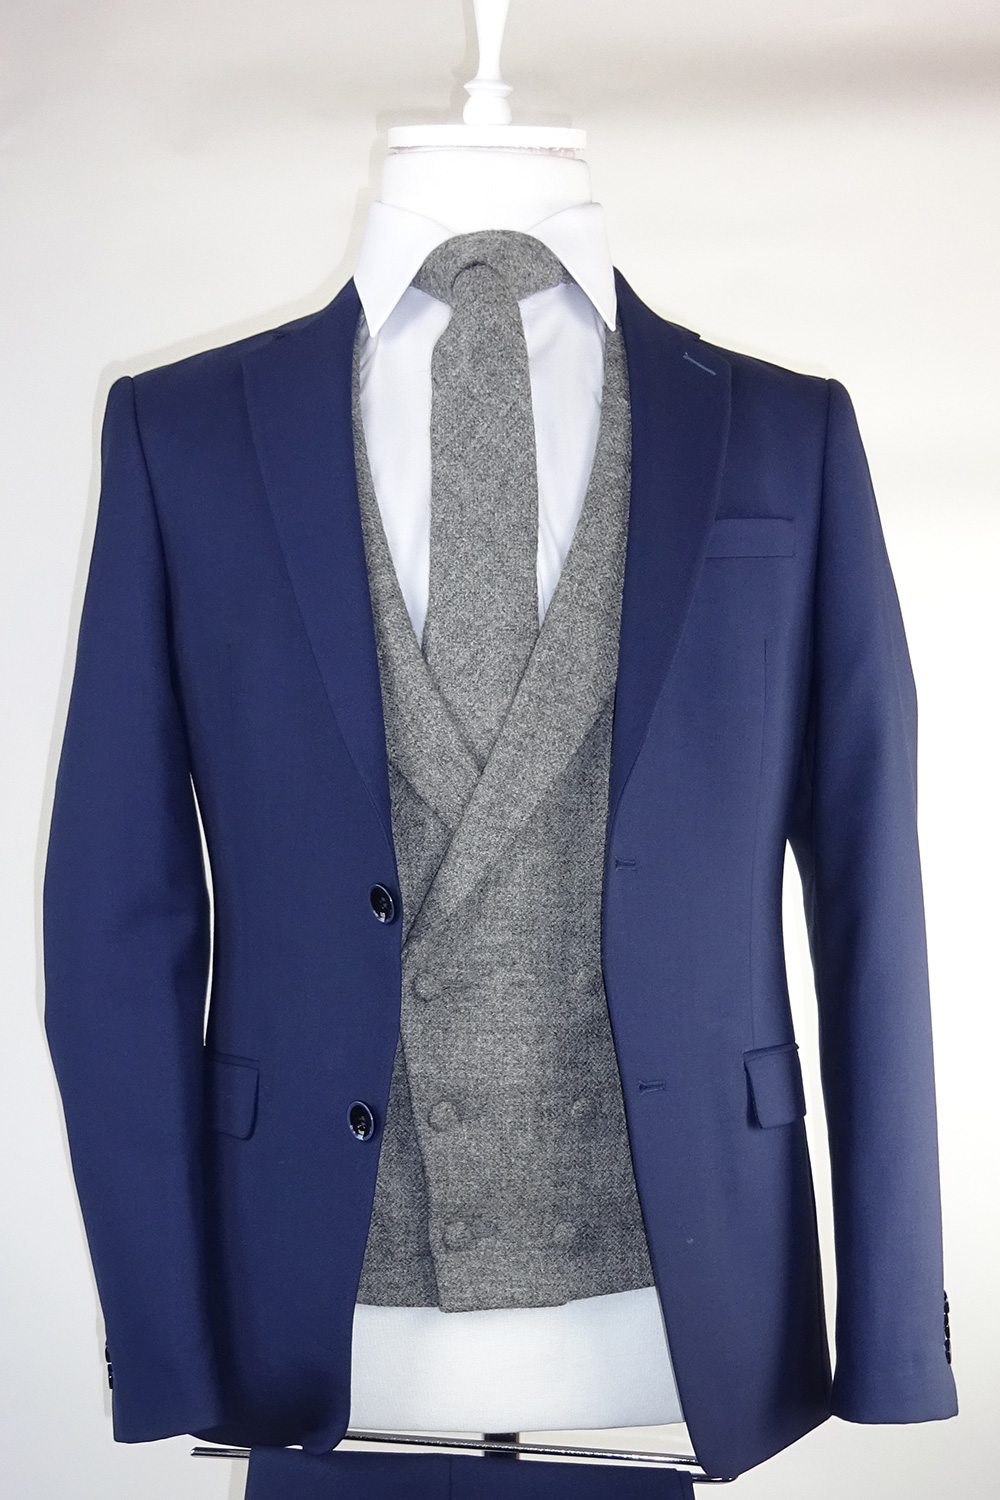 grey tweed blazer and waistcoat